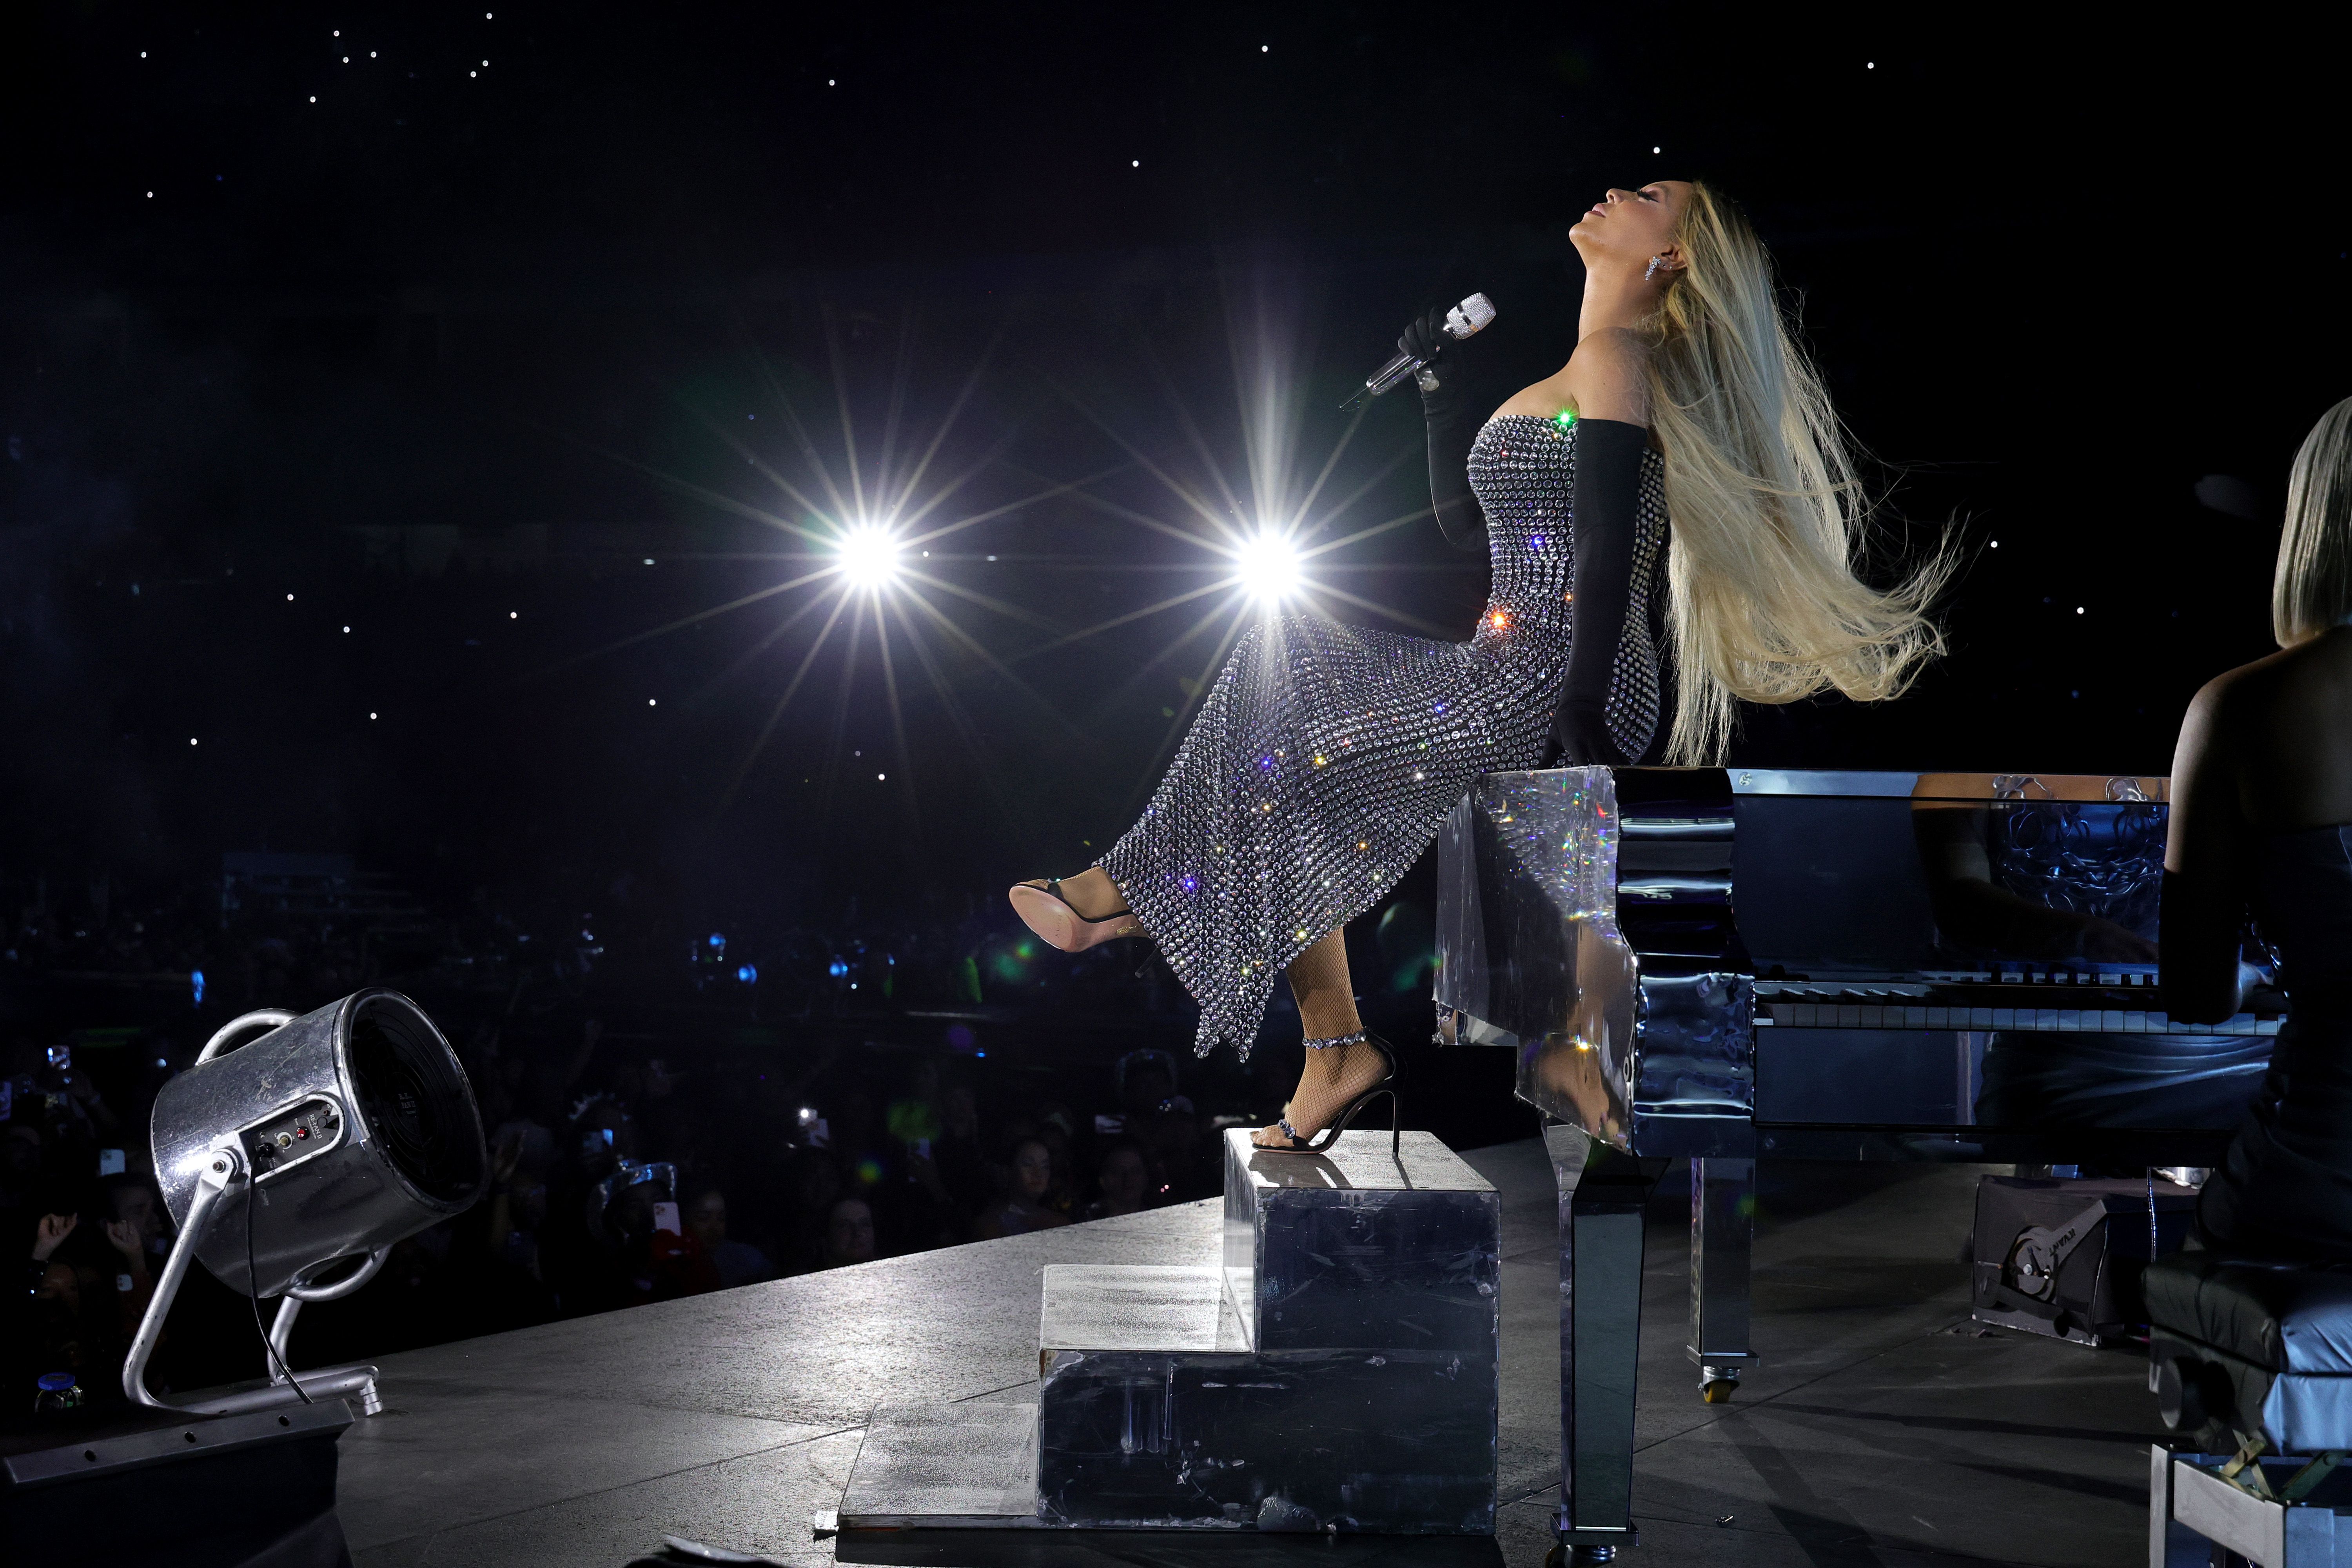 On Tour: Beyoncé in Louis Vuitton